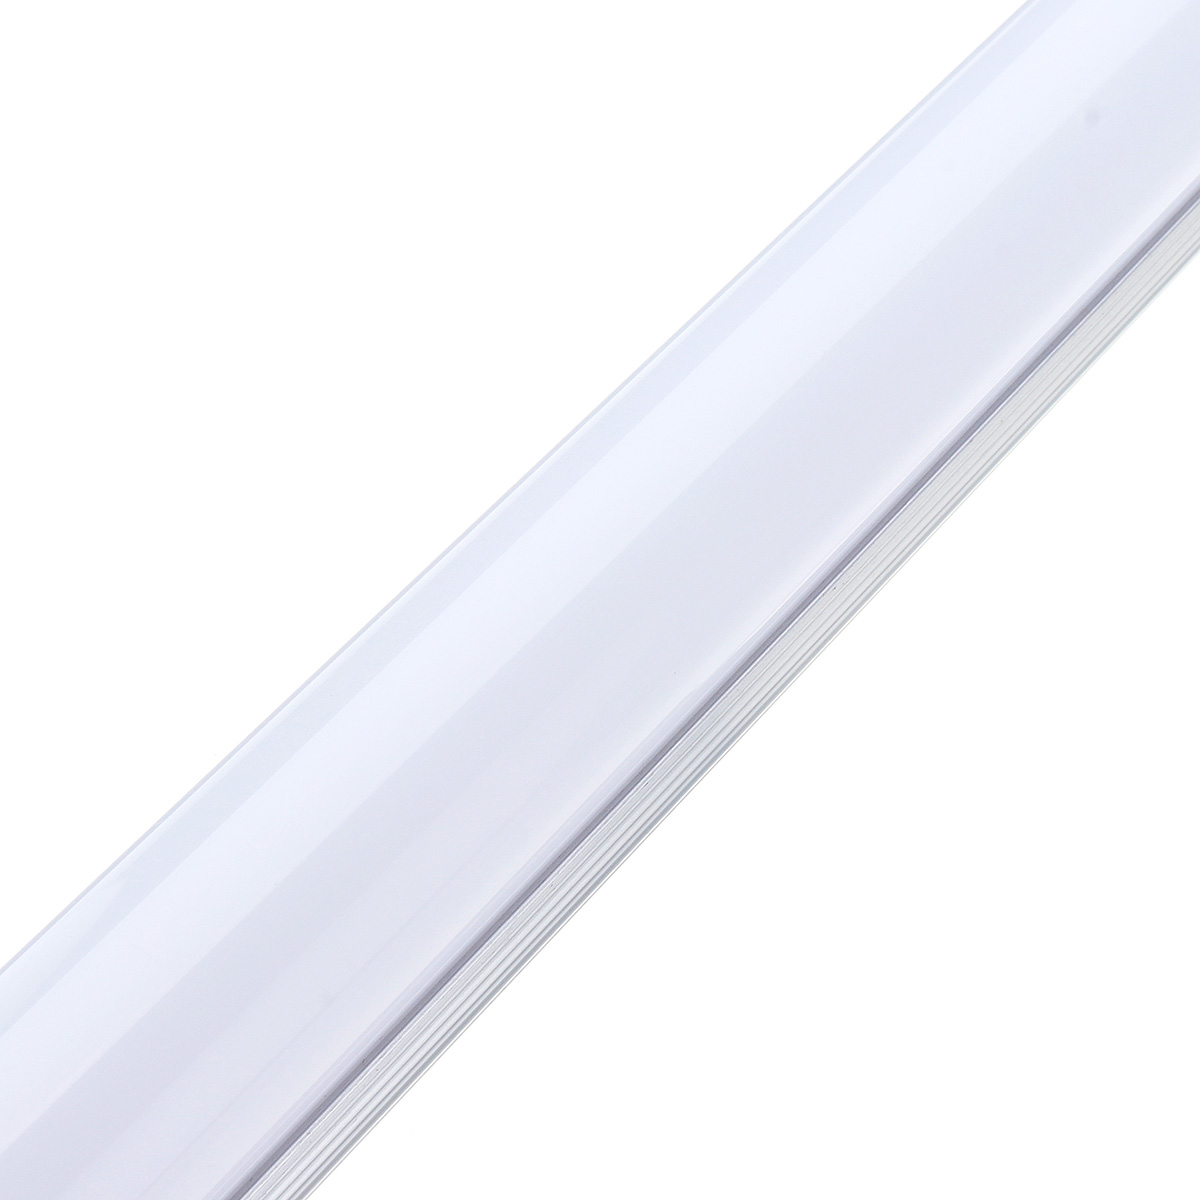 10PCS-50cm-T8-G13-8W-SMD2835-Fluorescent-Bulbs-36-LED-Tube-Light-for-Indoor-Home-Decor-AC85-265V-1477777-6